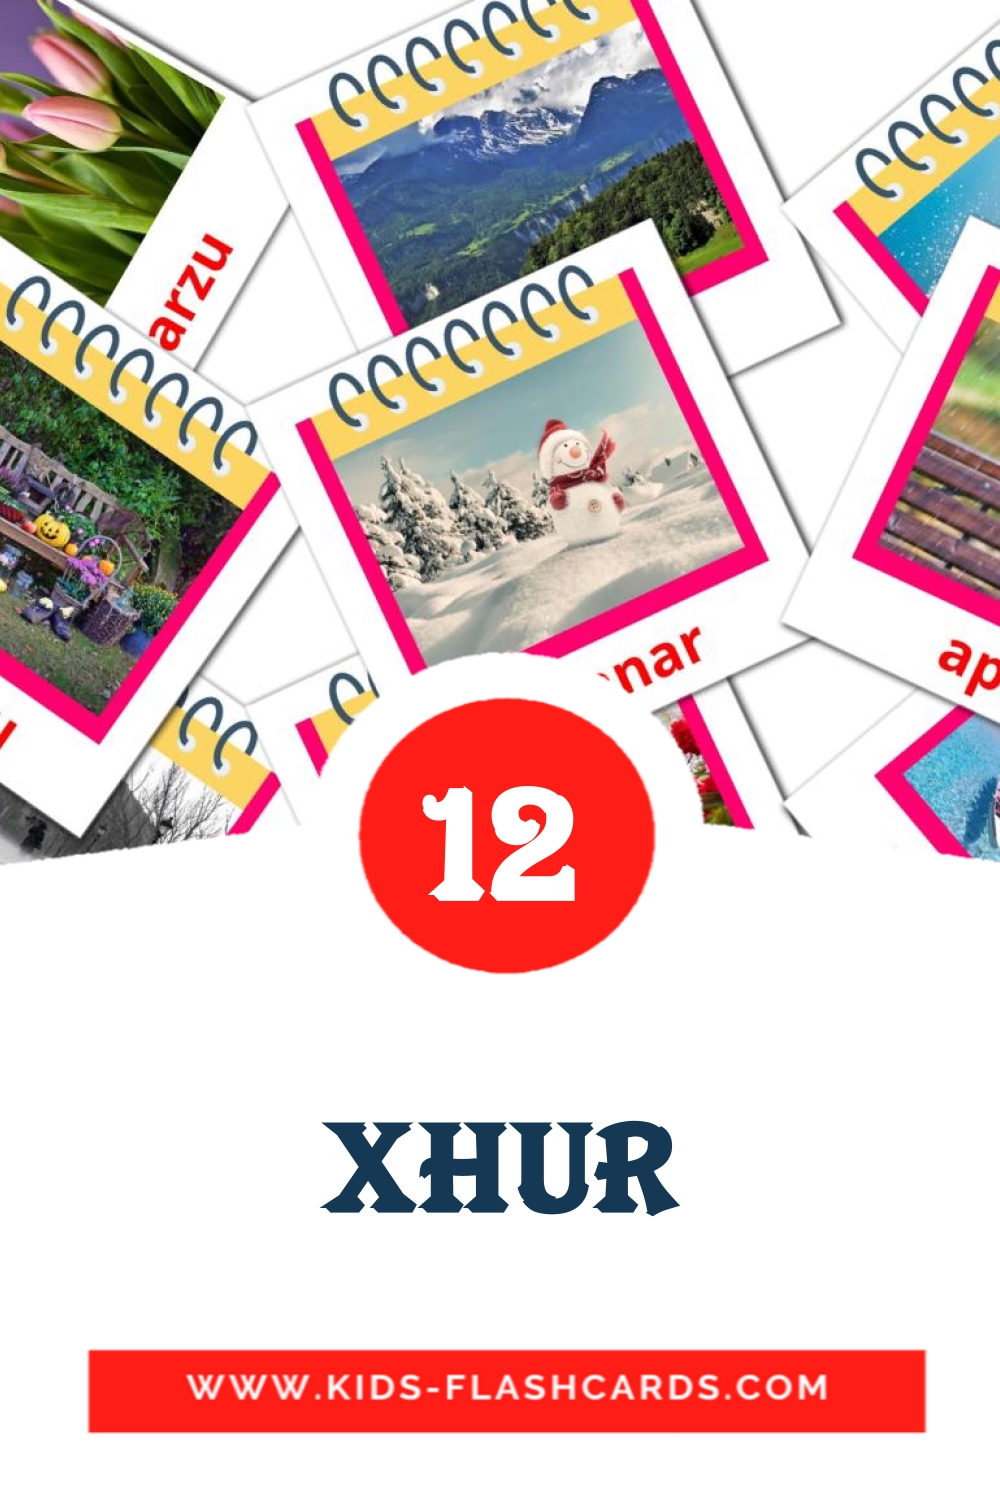 12 Cartões com Imagens de Xhur para Jardim de Infância em maltês